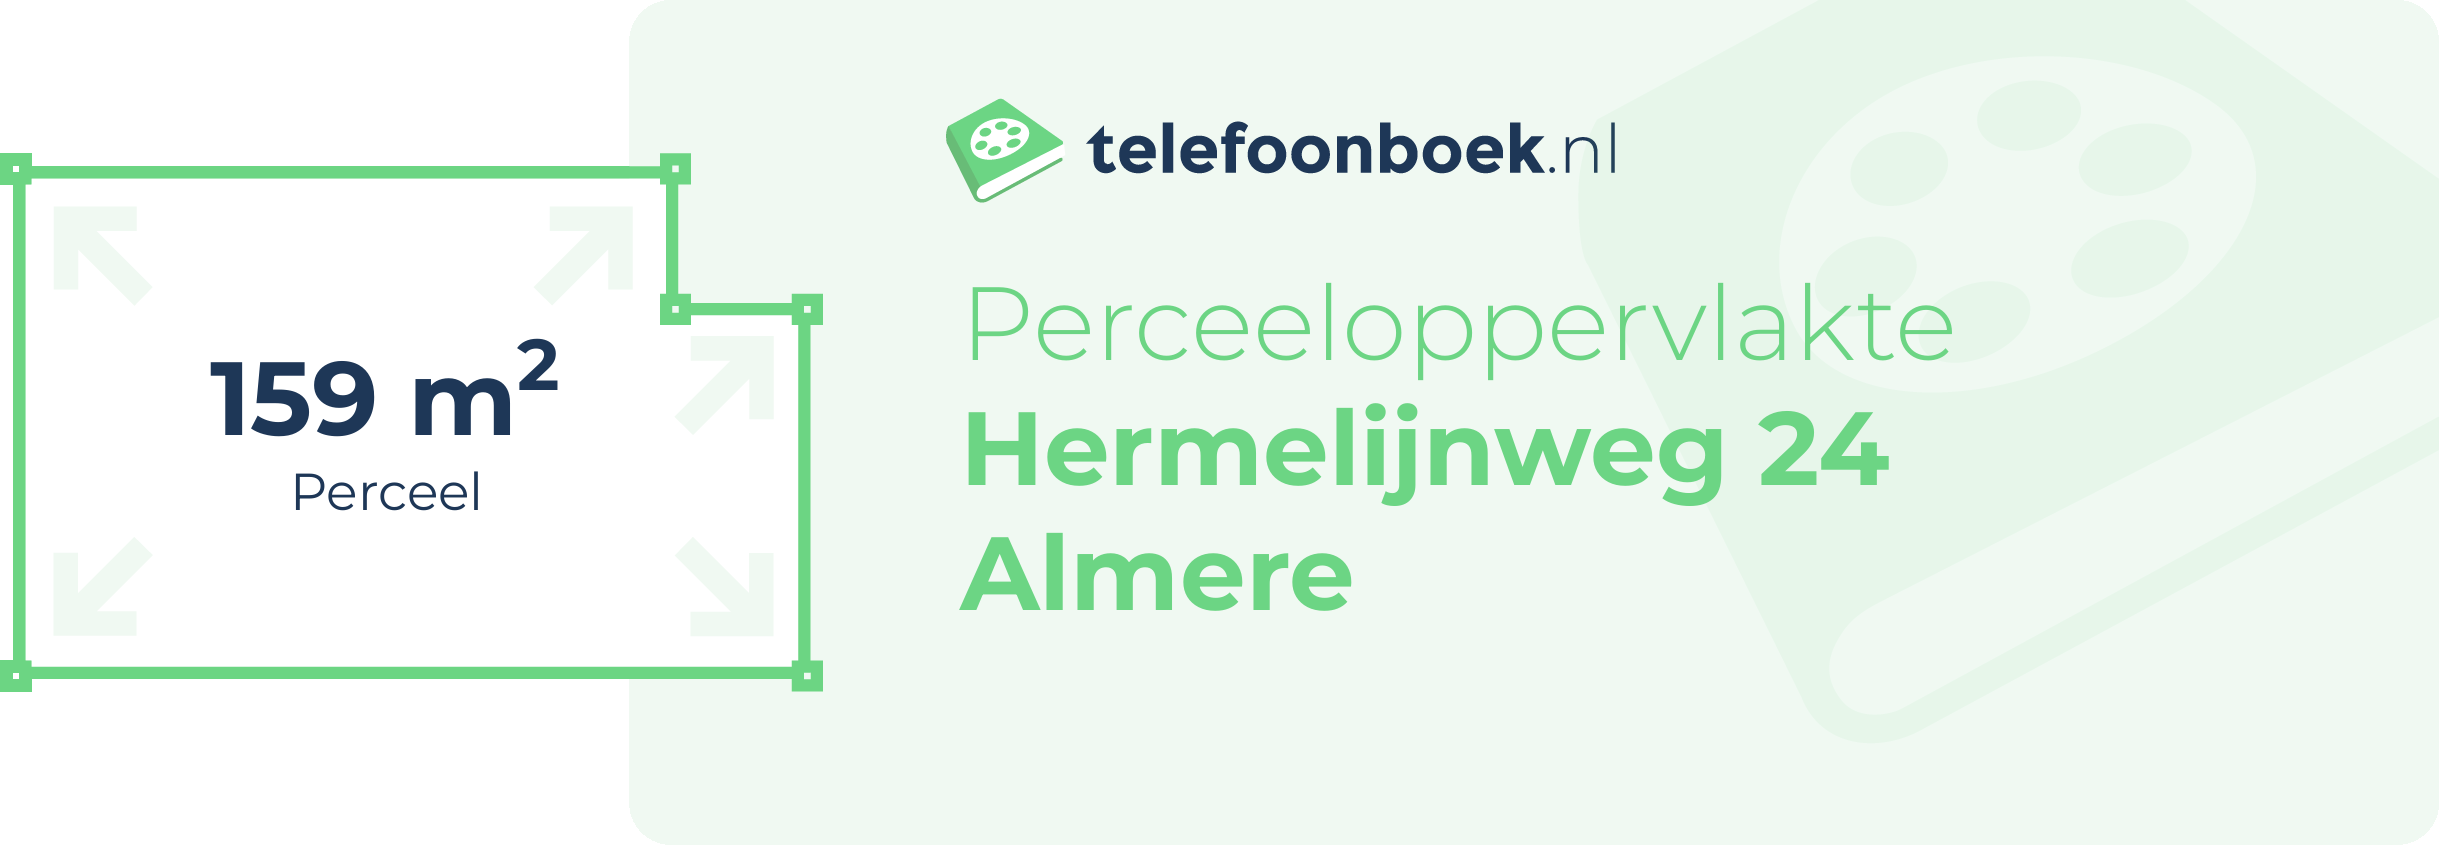 Perceeloppervlakte Hermelijnweg 24 Almere